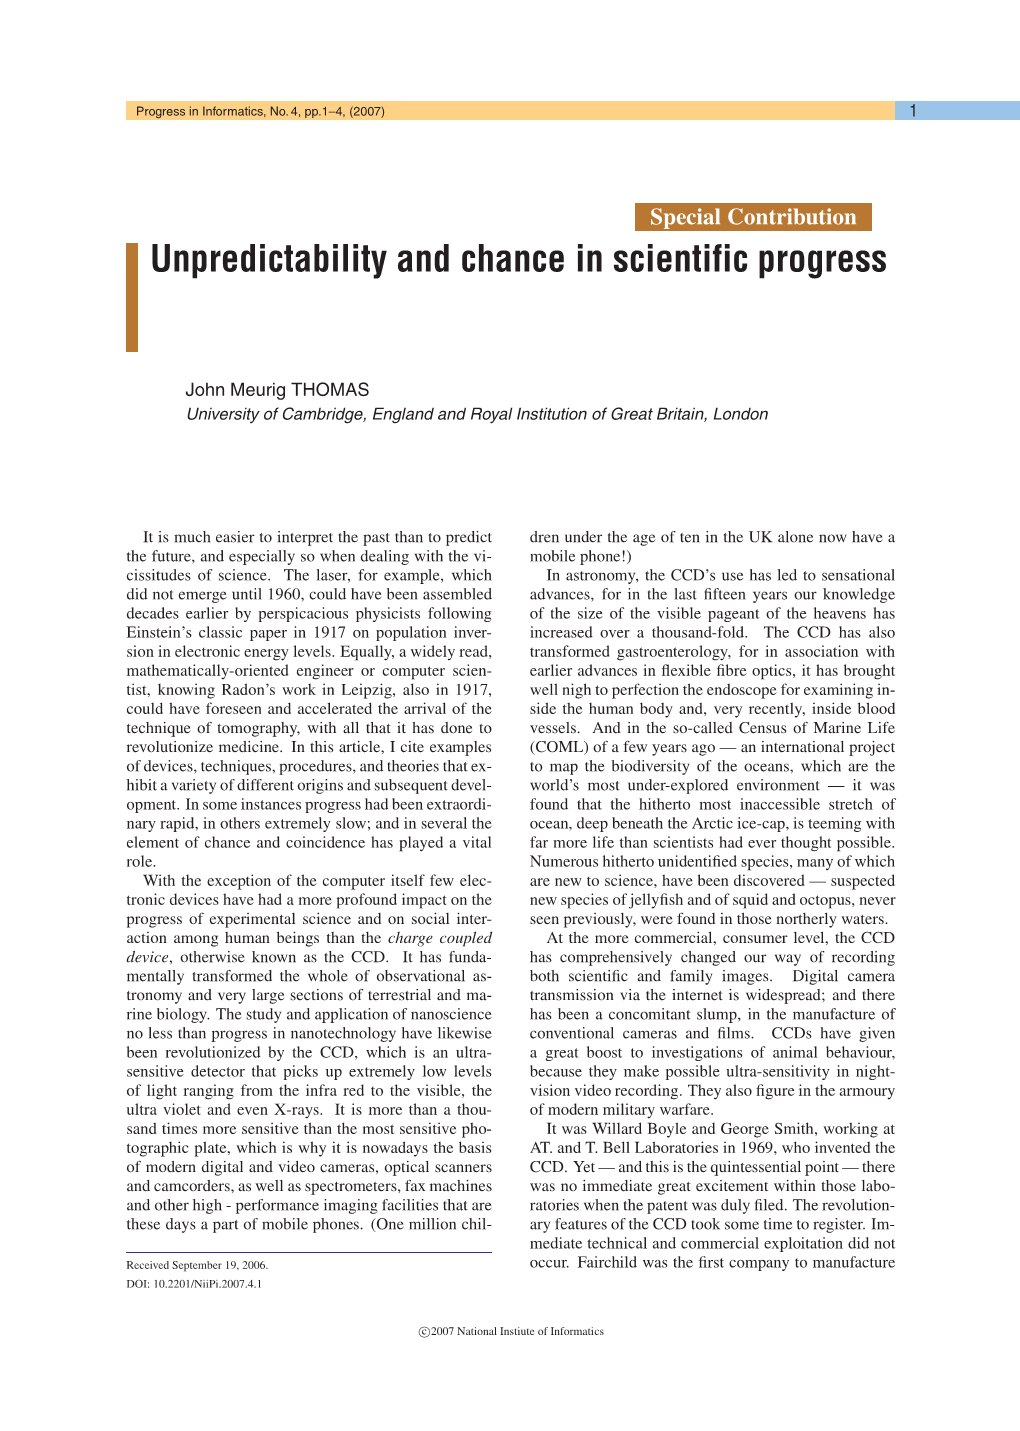 Unpredictability and Chance in Scientific Progress